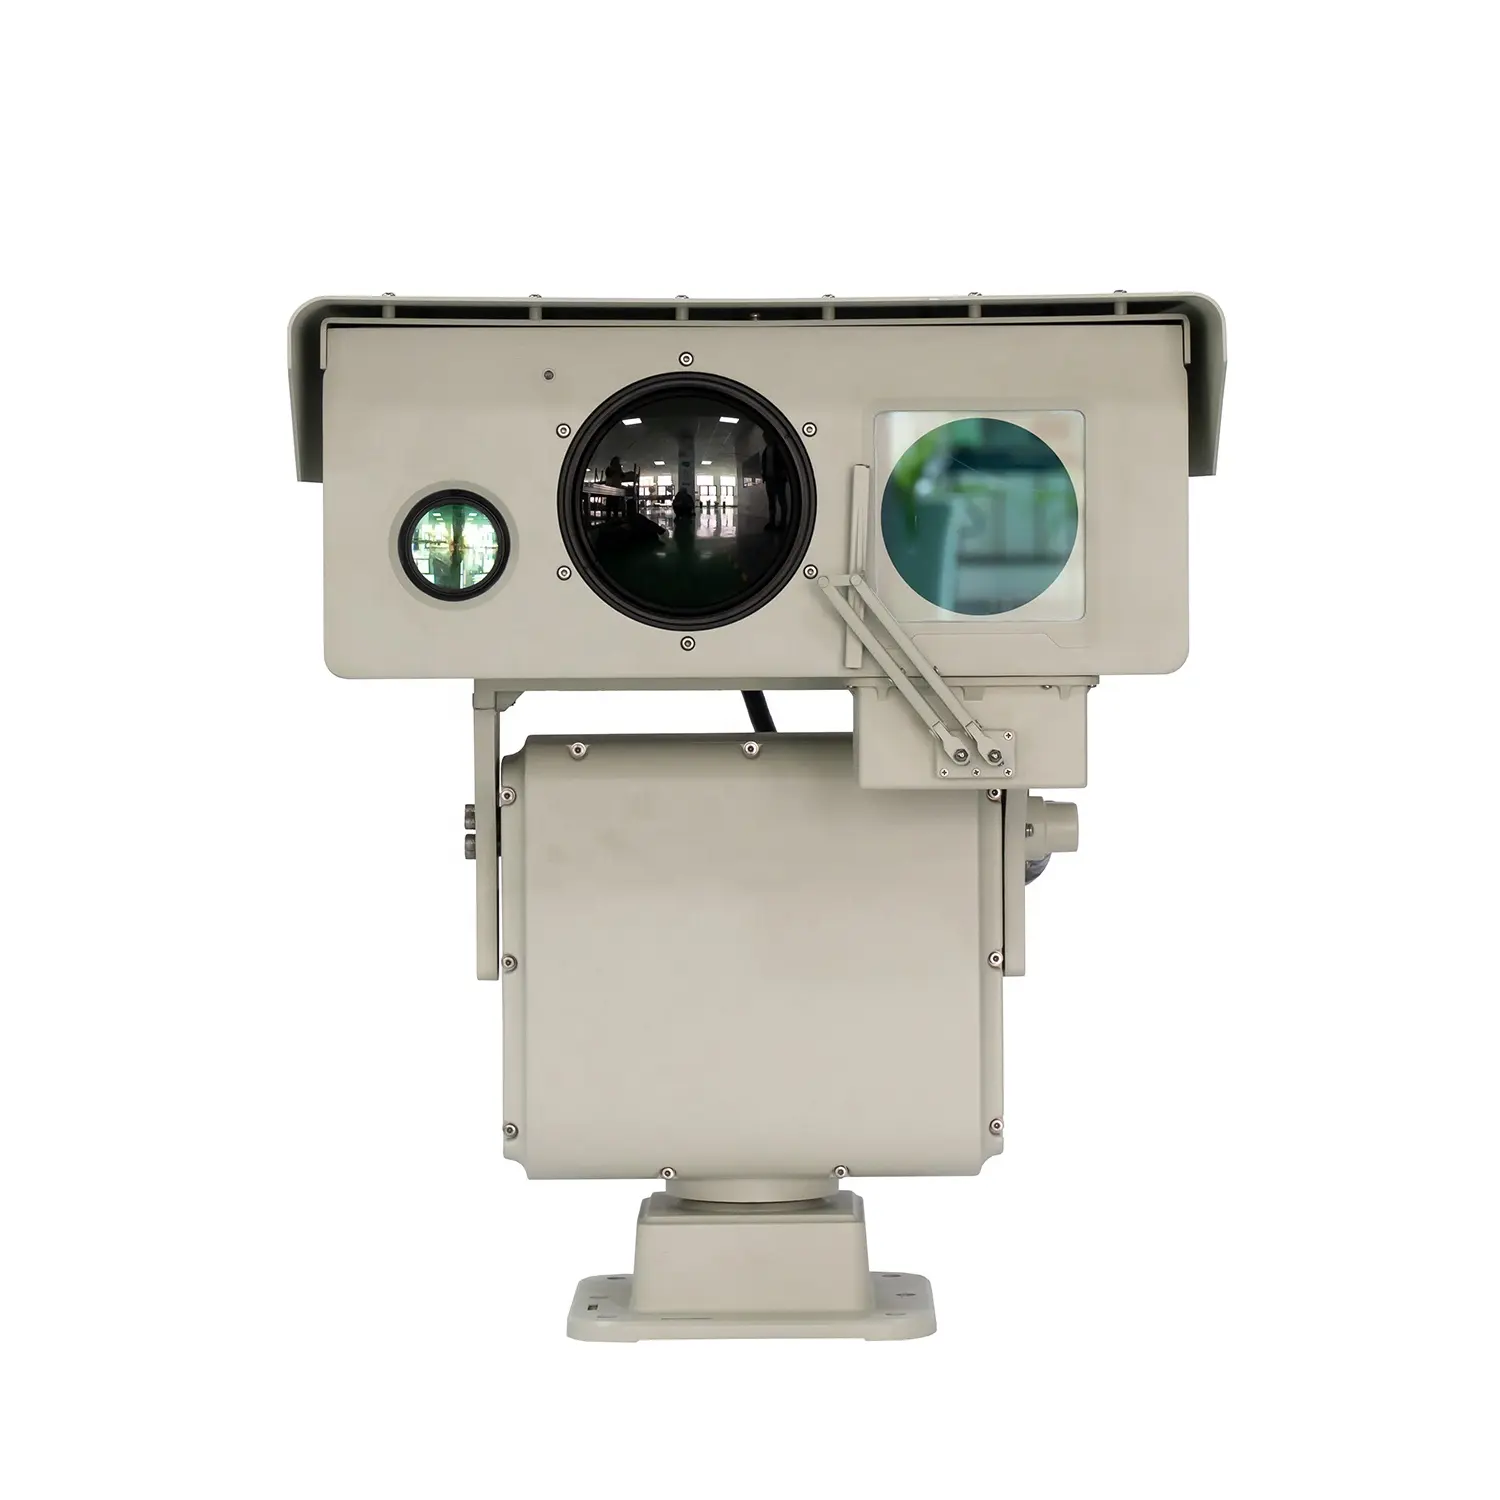 Foshvision kamera video rahasia, penglihatan malam jarak jauh untuk keamanan luar ruangan